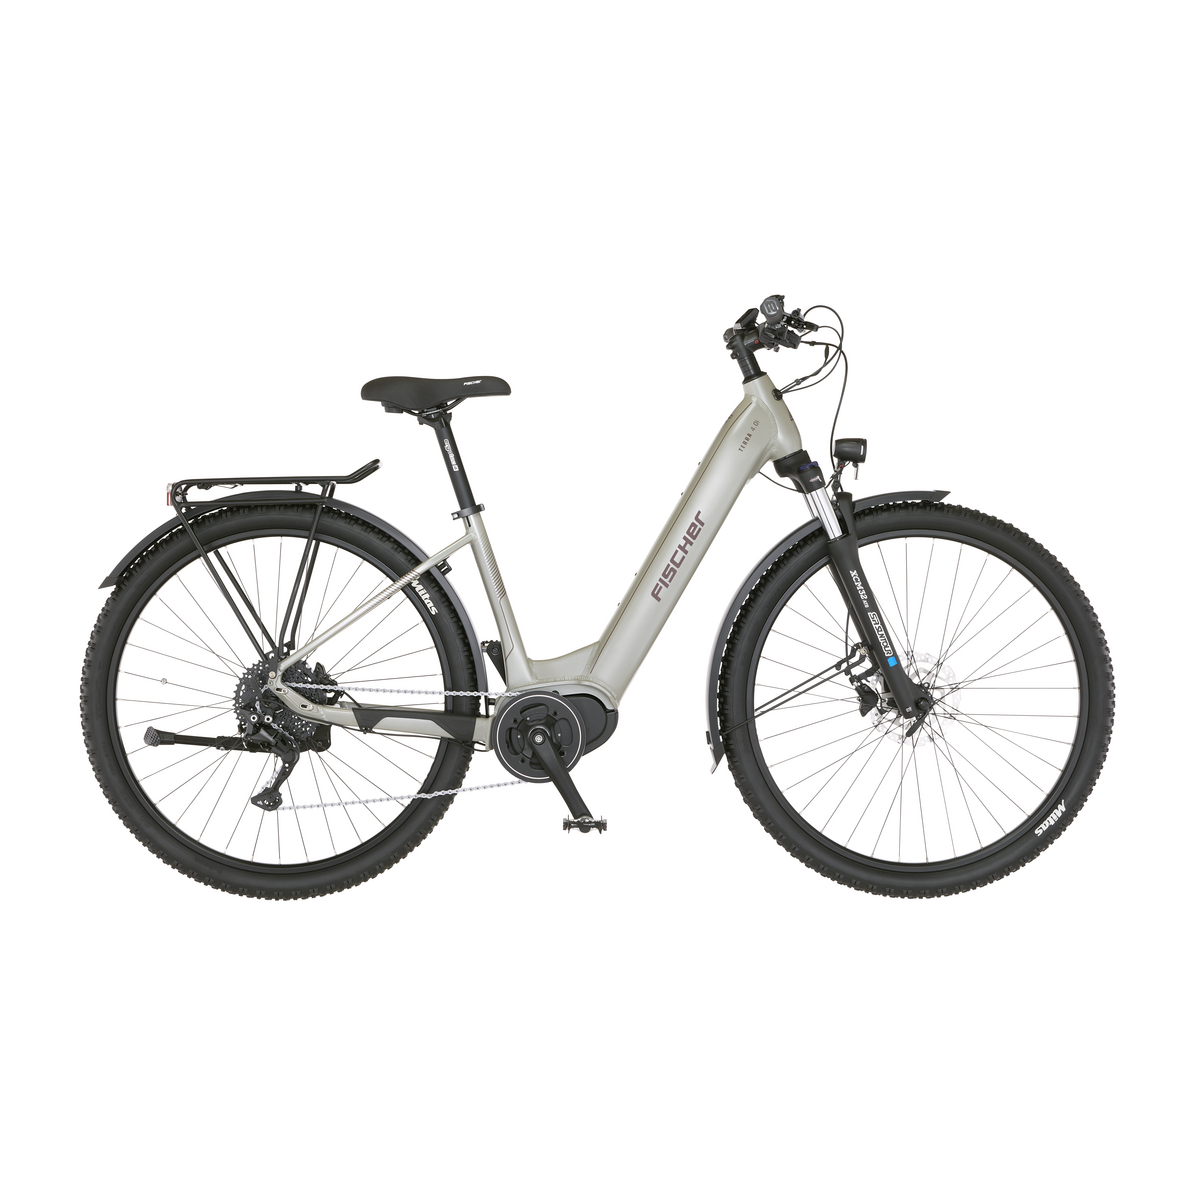 FISCHER All Terrain E-Bike Terra 8.0i - schwarz, RH 55 cm, 29 Zoll